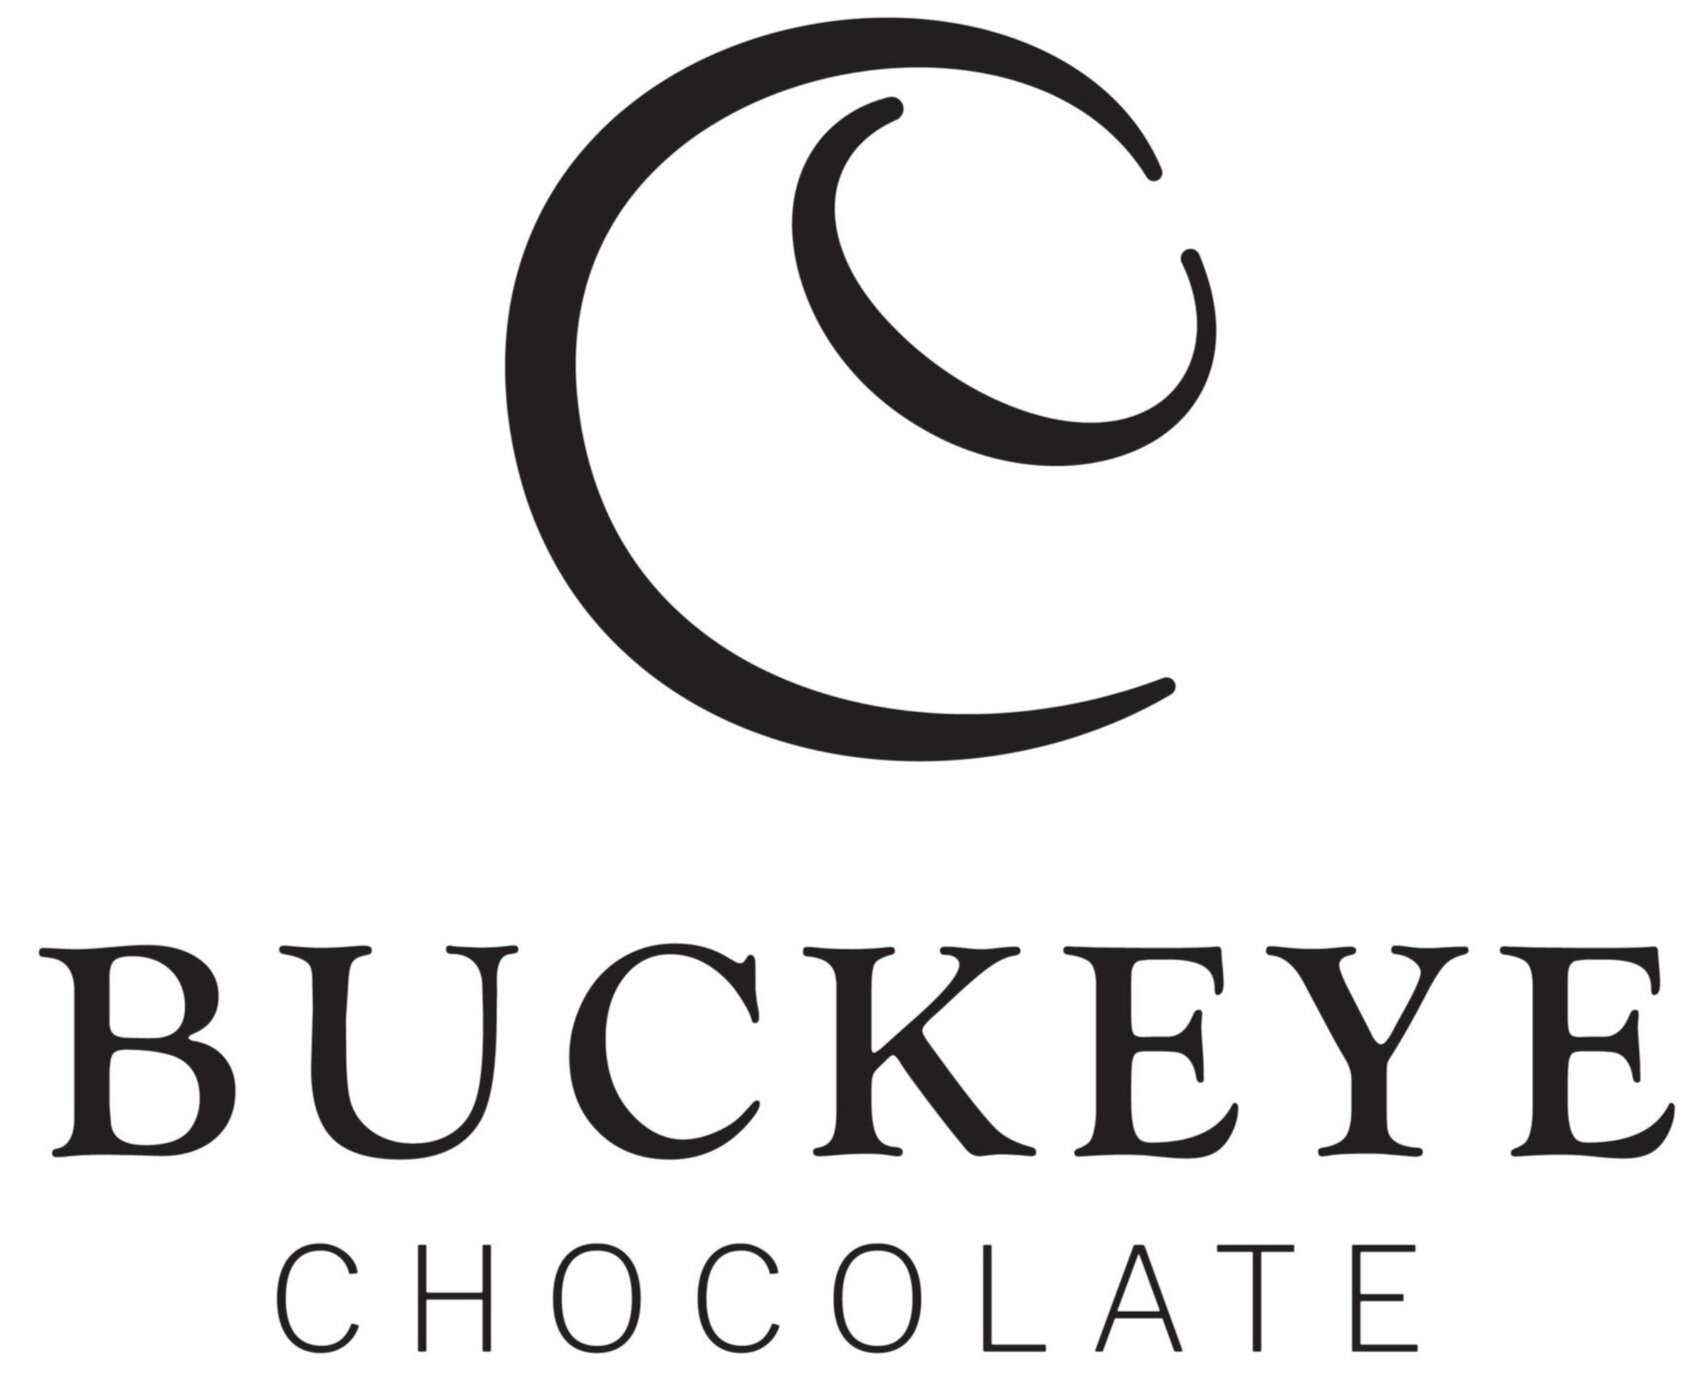 Buckeye Chocolate Co